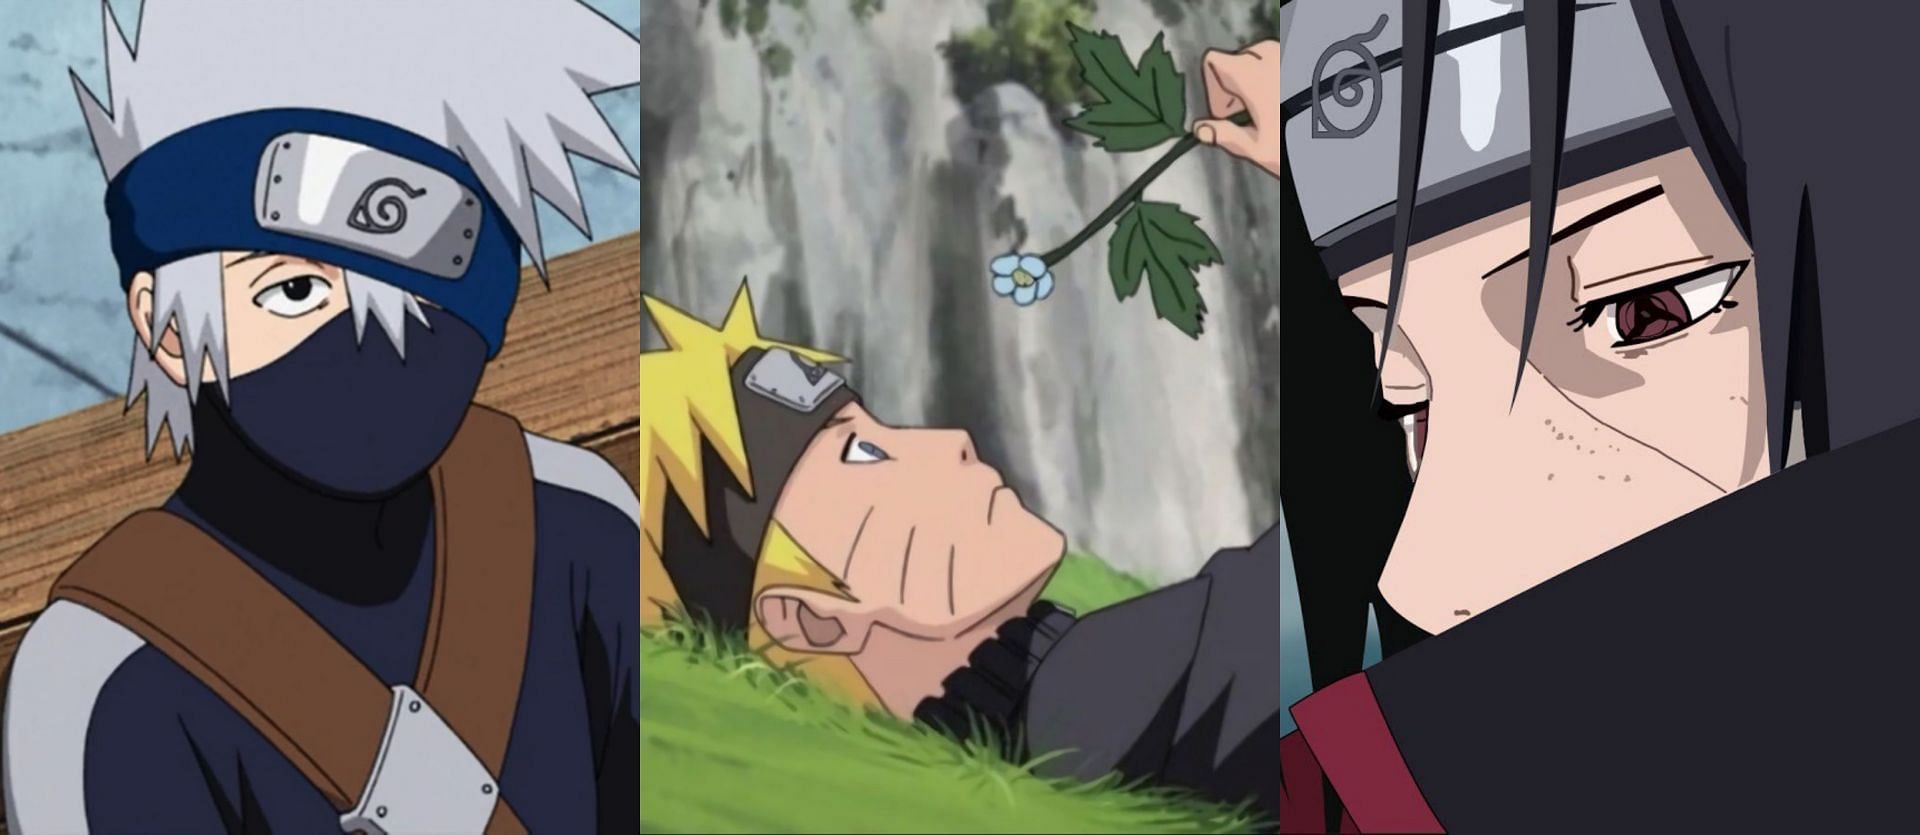 Naruto, Kakashi, and Itachi (Image via Studio Pierrot)